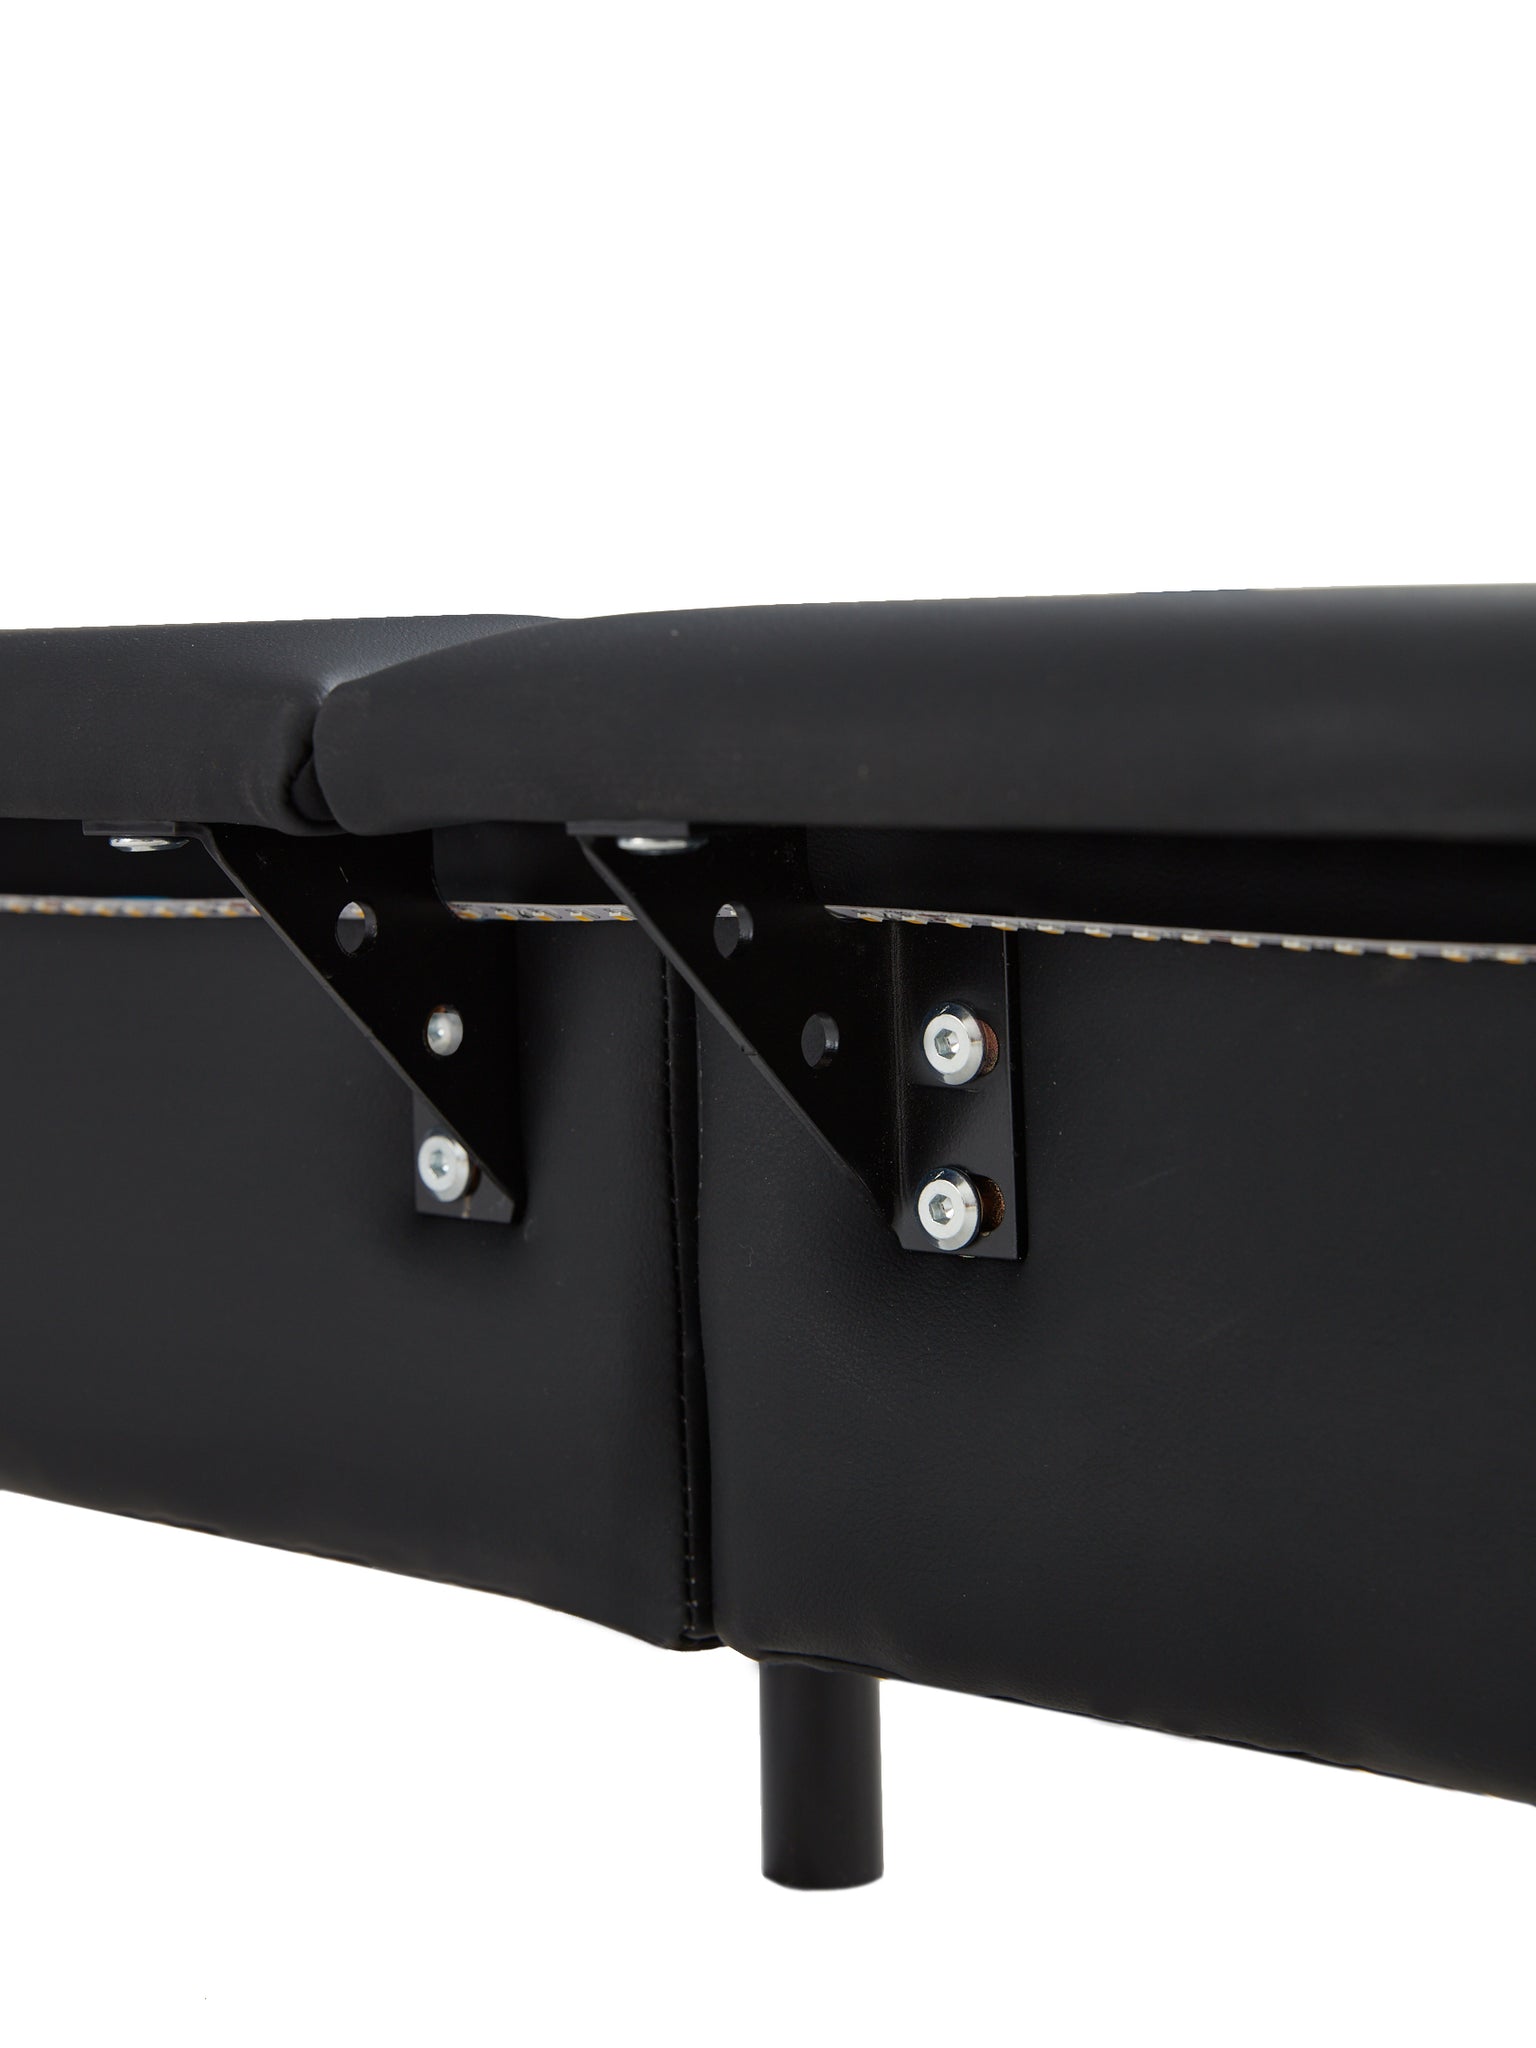 Full Size Upholstered Platform Bed with Sensor Light black-upholstered